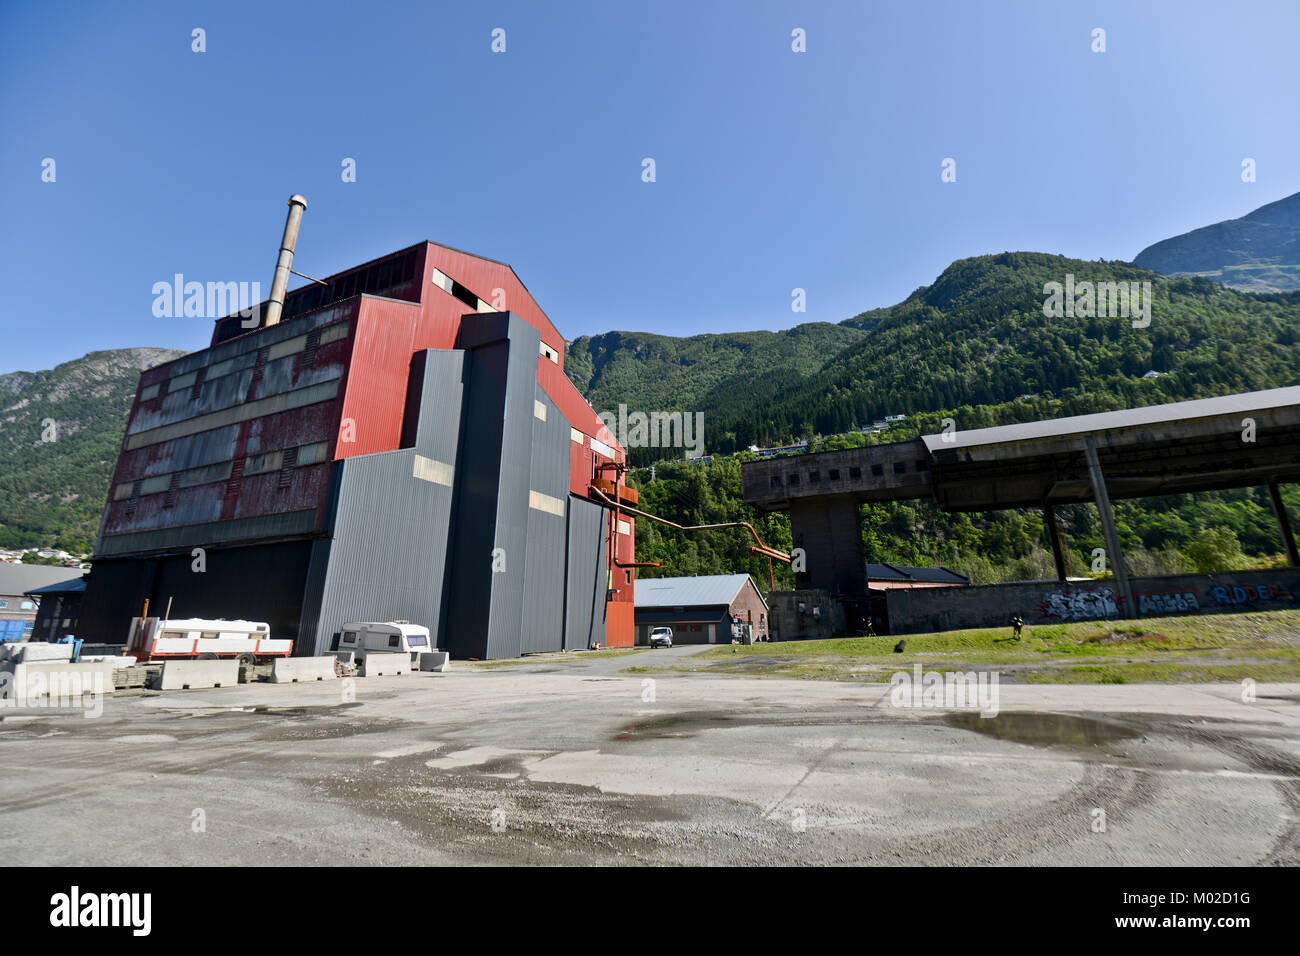 L'aciérie ODDA en Norvège (Smito i Odda) - usine industrielle abandonnée Banque D'Images